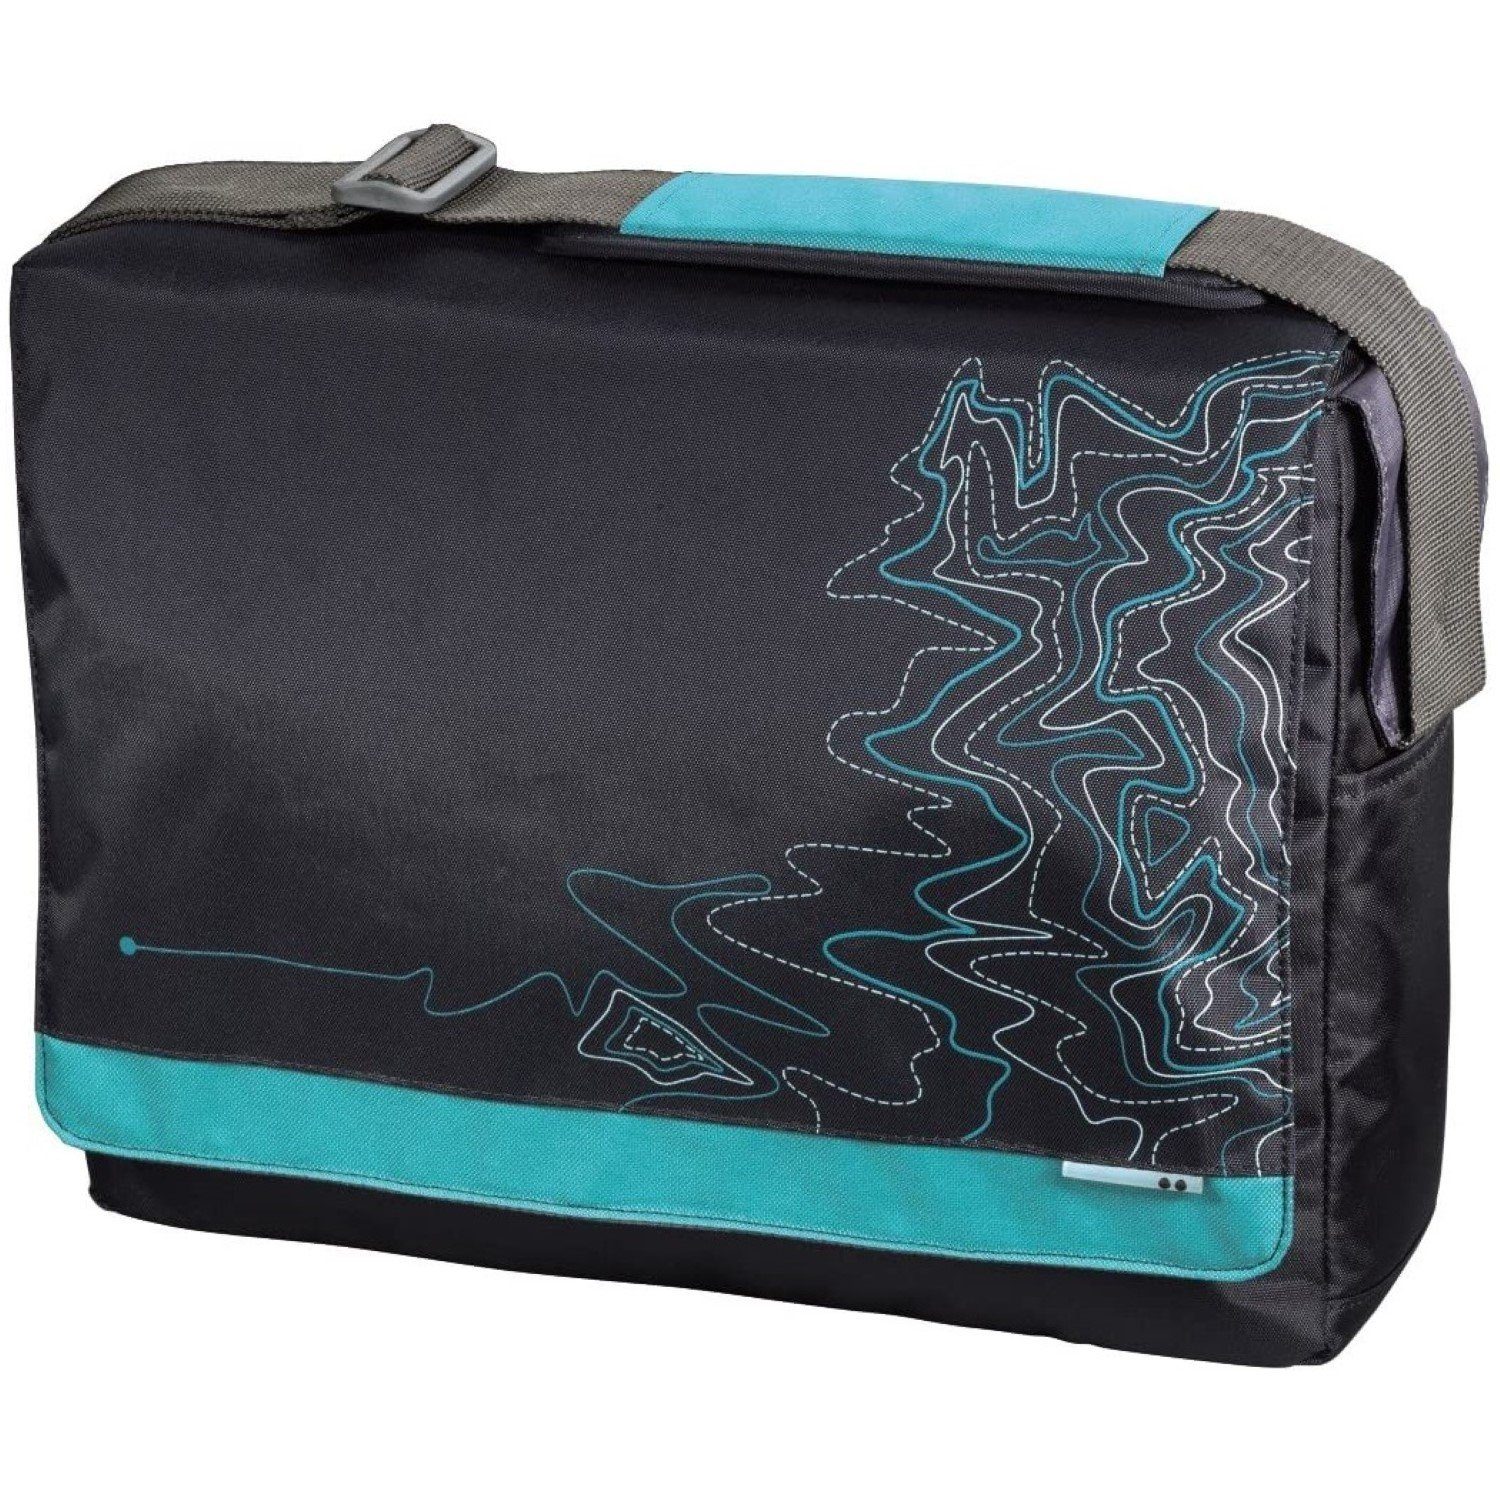 aha Laptoptasche Messenger Bag Lines Blau Notebook-Tasche 15-16